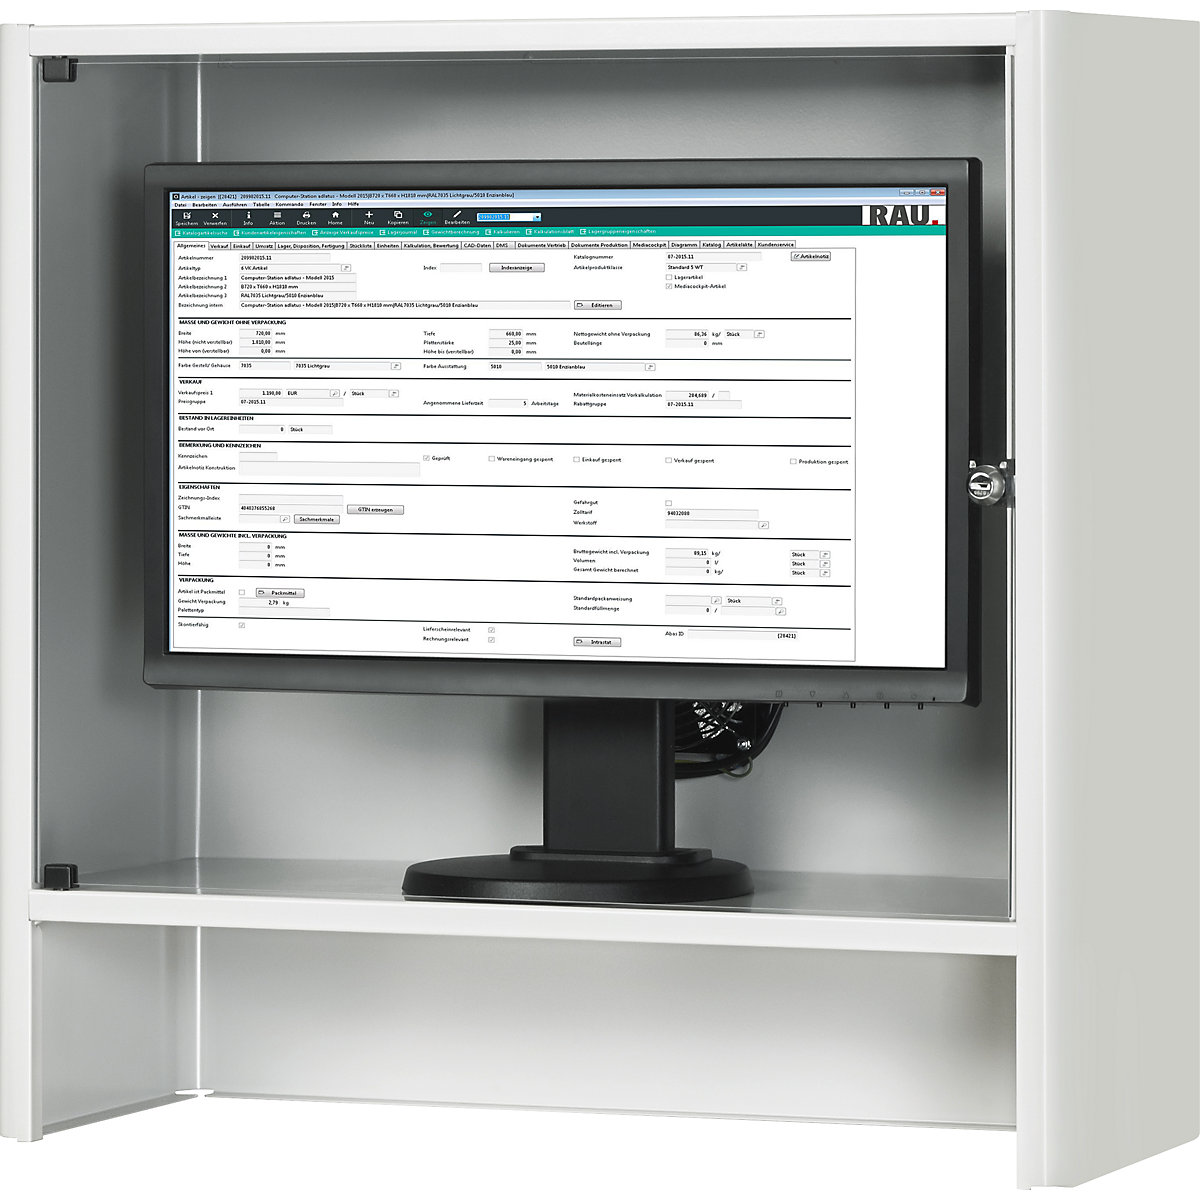 RAU – Carcasă pentru monitor cu ventilator activ integrat (Imagine produs 4)